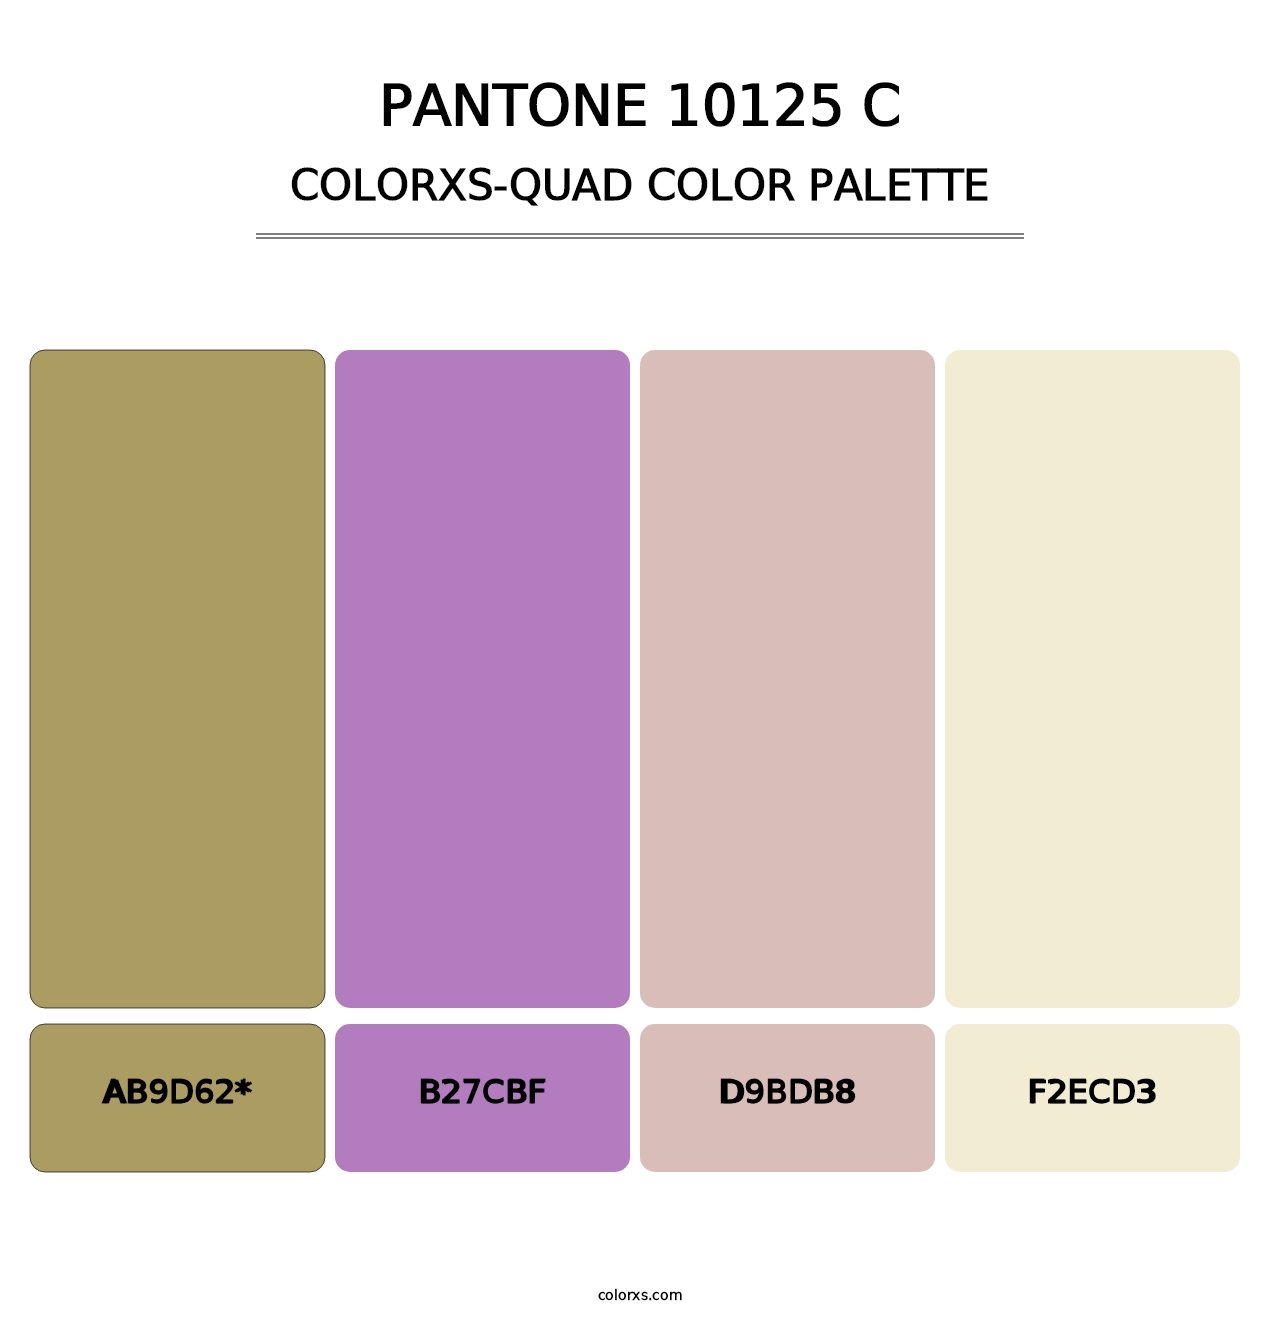 PANTONE 10125 C - Colorxs Quad Palette